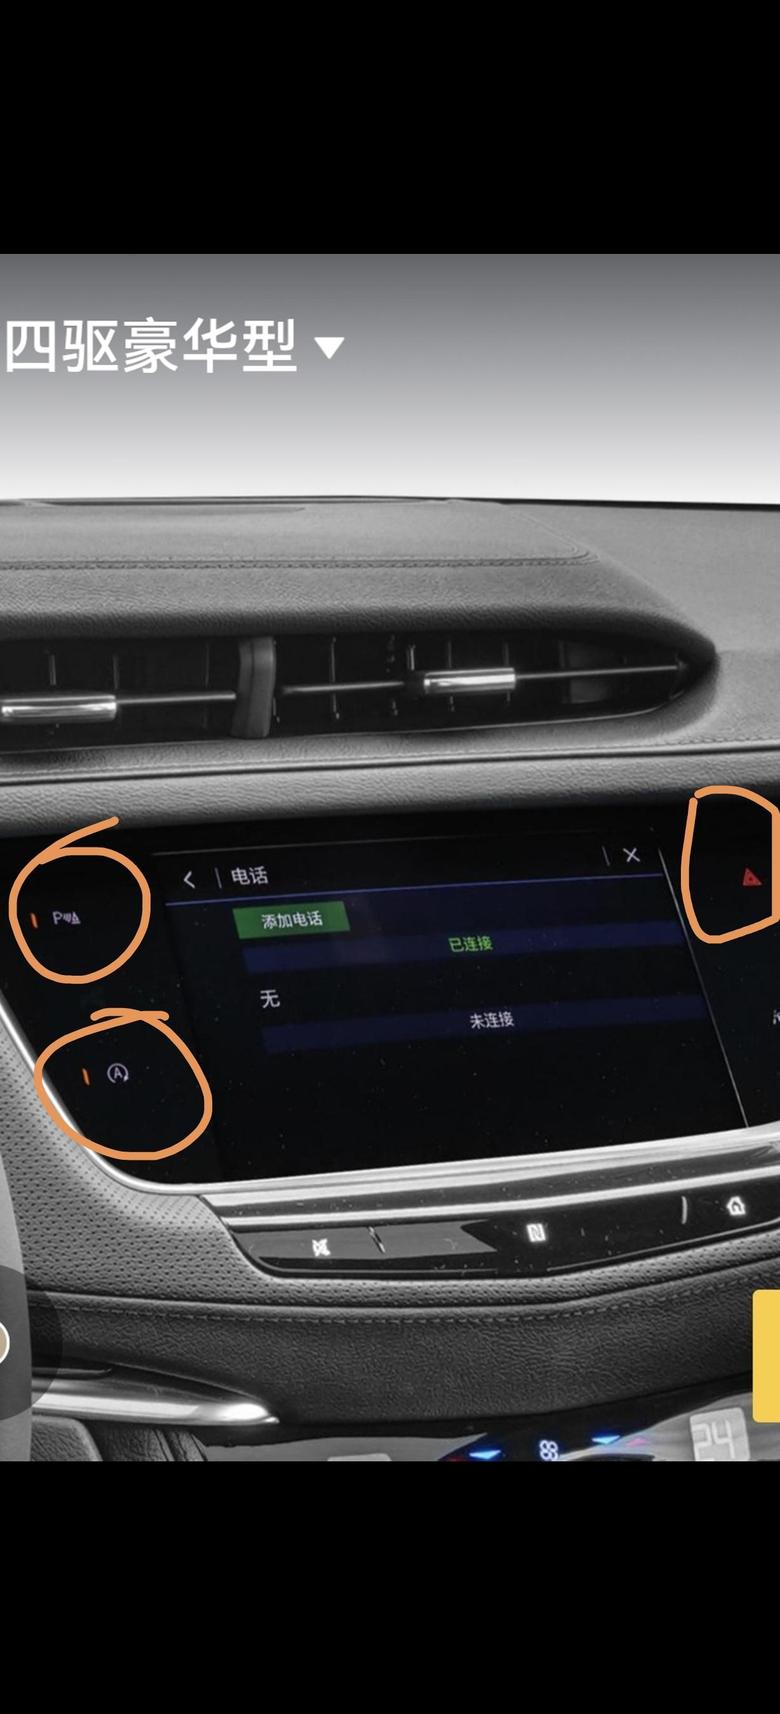 凯迪拉克xt5 为啥锁车后中控这三个指示灯一直亮着？